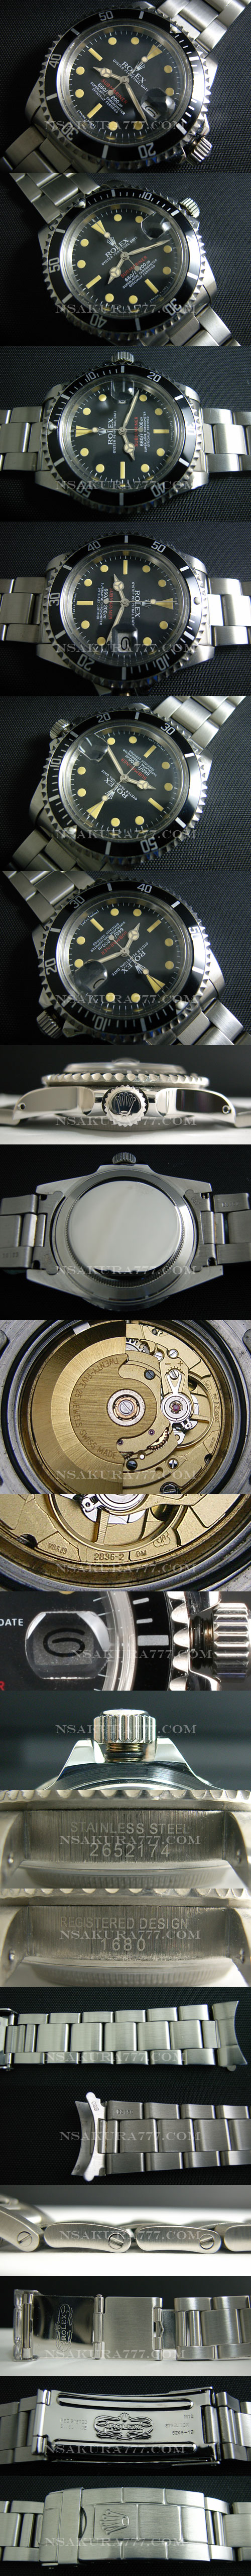 レプリカ時計ロレックス サブマリーナ 1680旧サブ 赤サブ初期モデル2836搭載 - ウインドウを閉じる